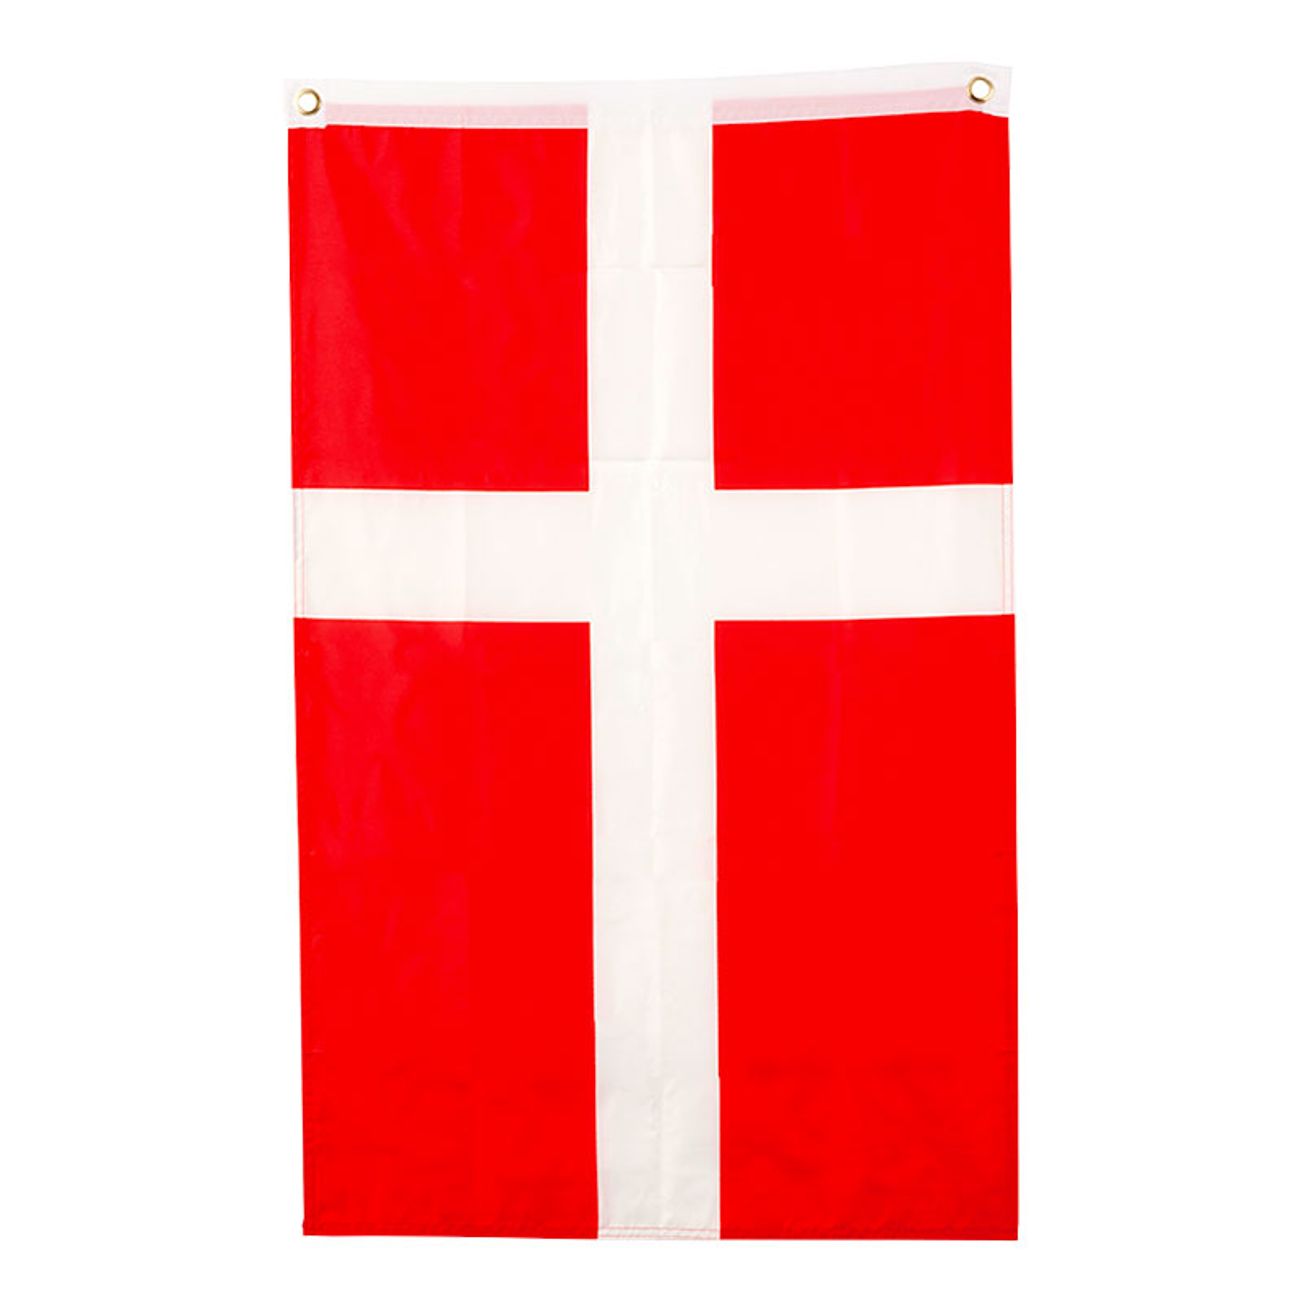 dansk-flagga-i-tyg-60x90cm-1